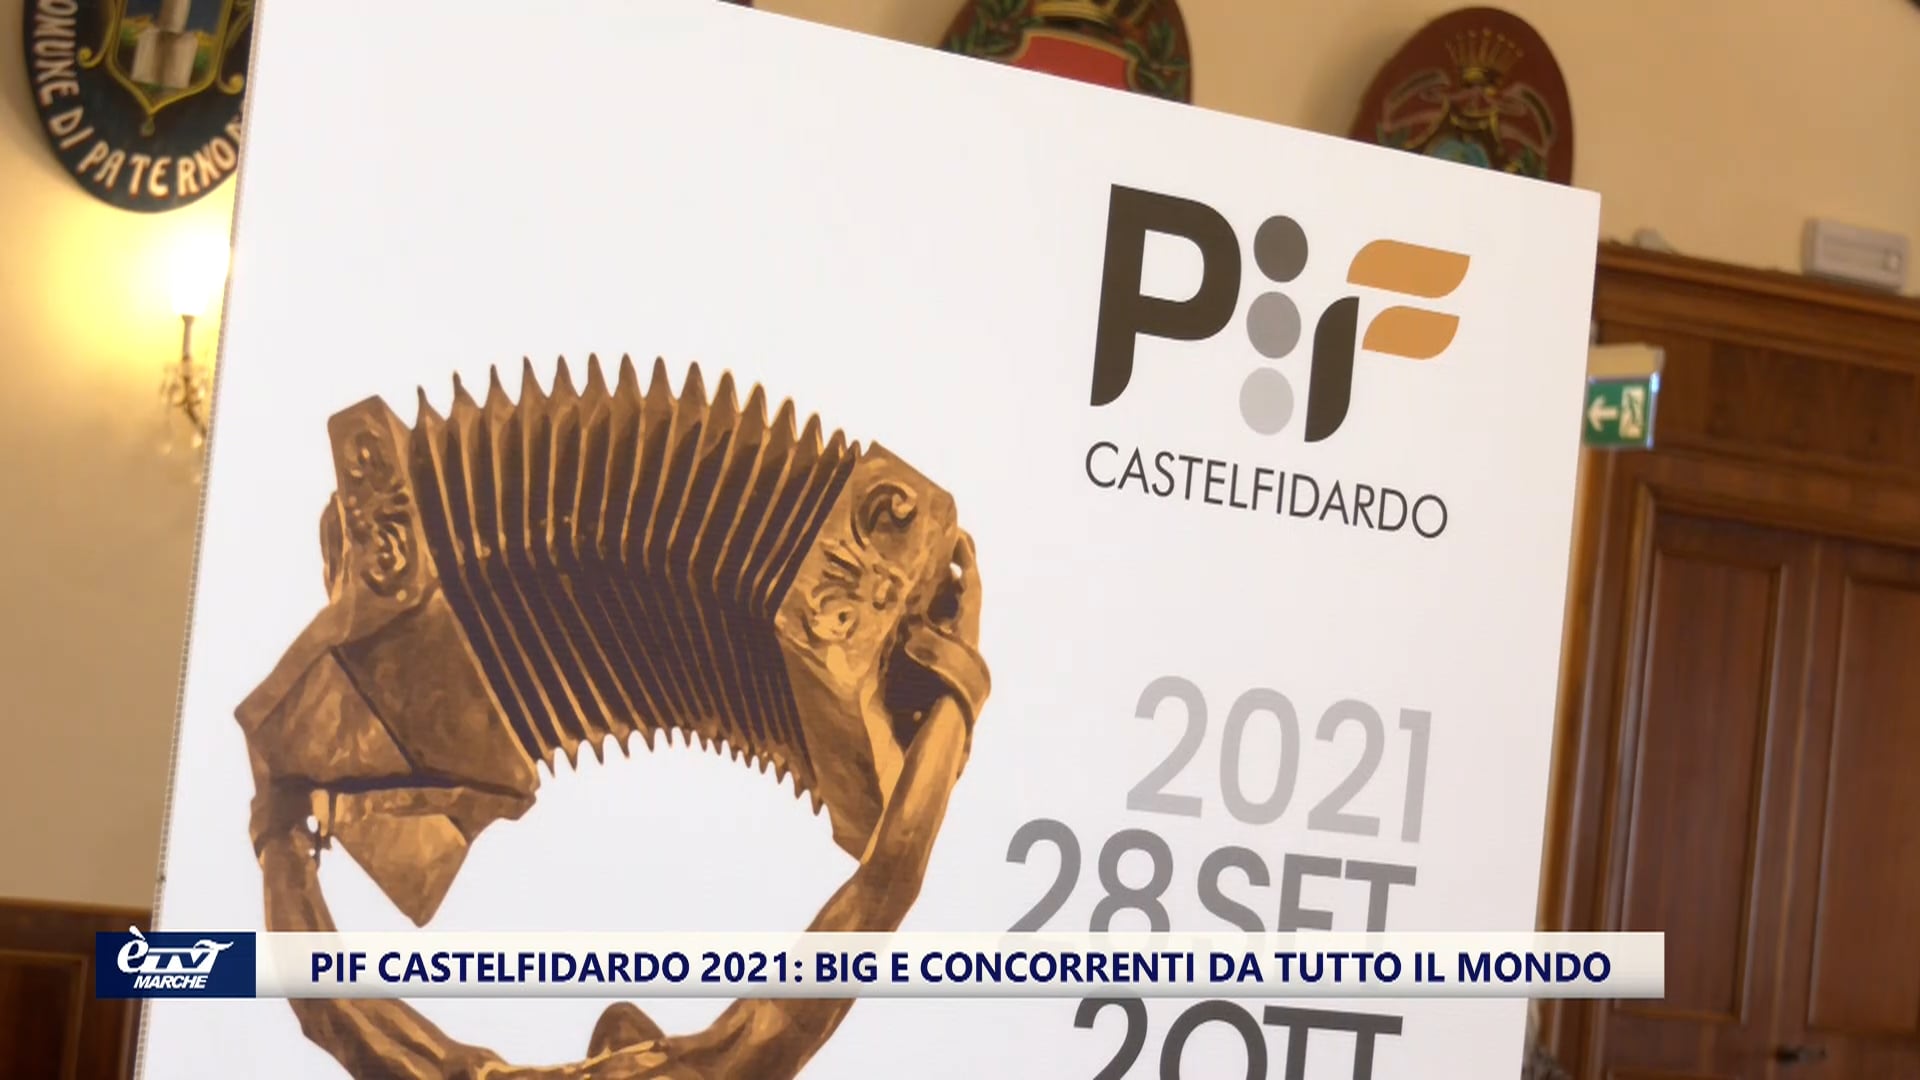 PIF Castelfidardo 2021: big e artisti da tutto il mondo